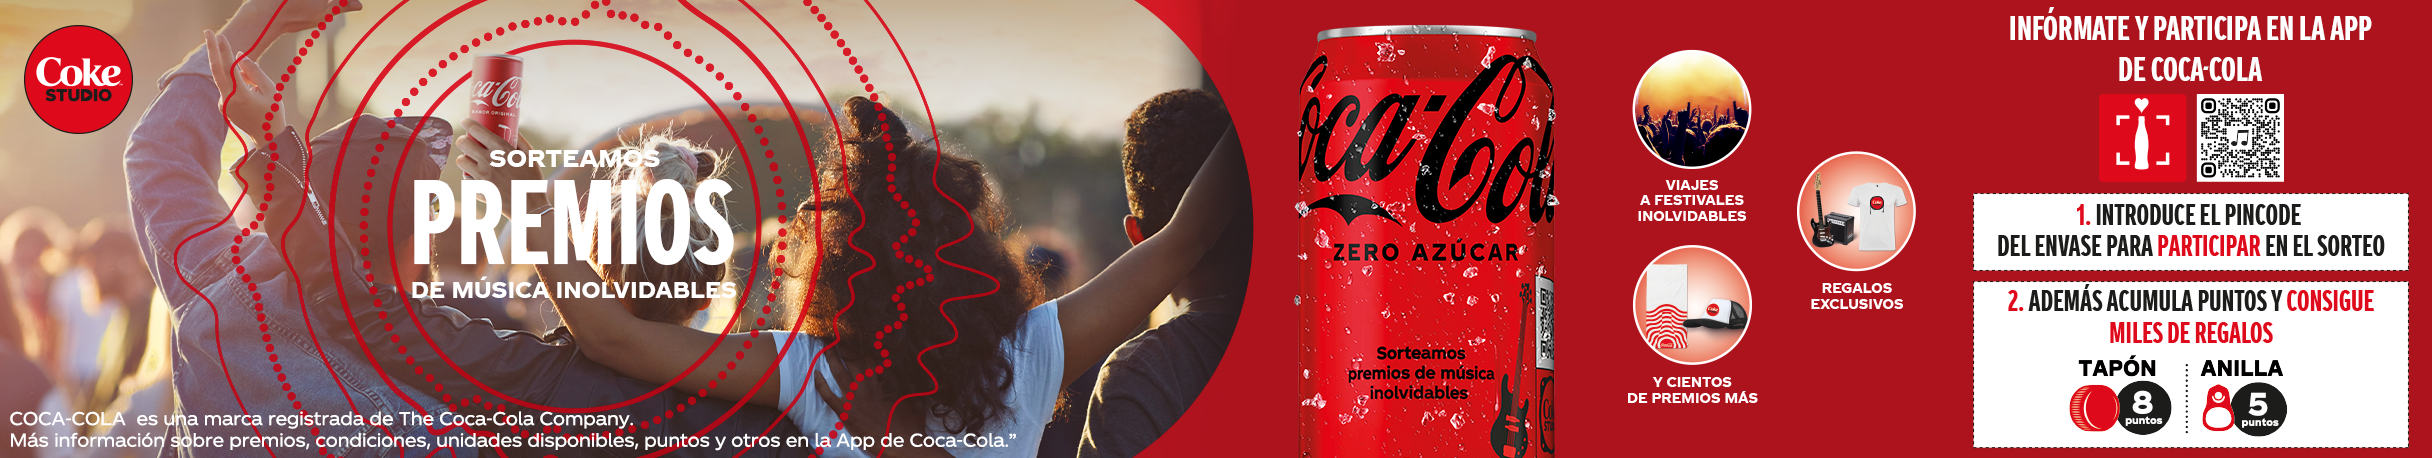 Promoción de Coca-Cola